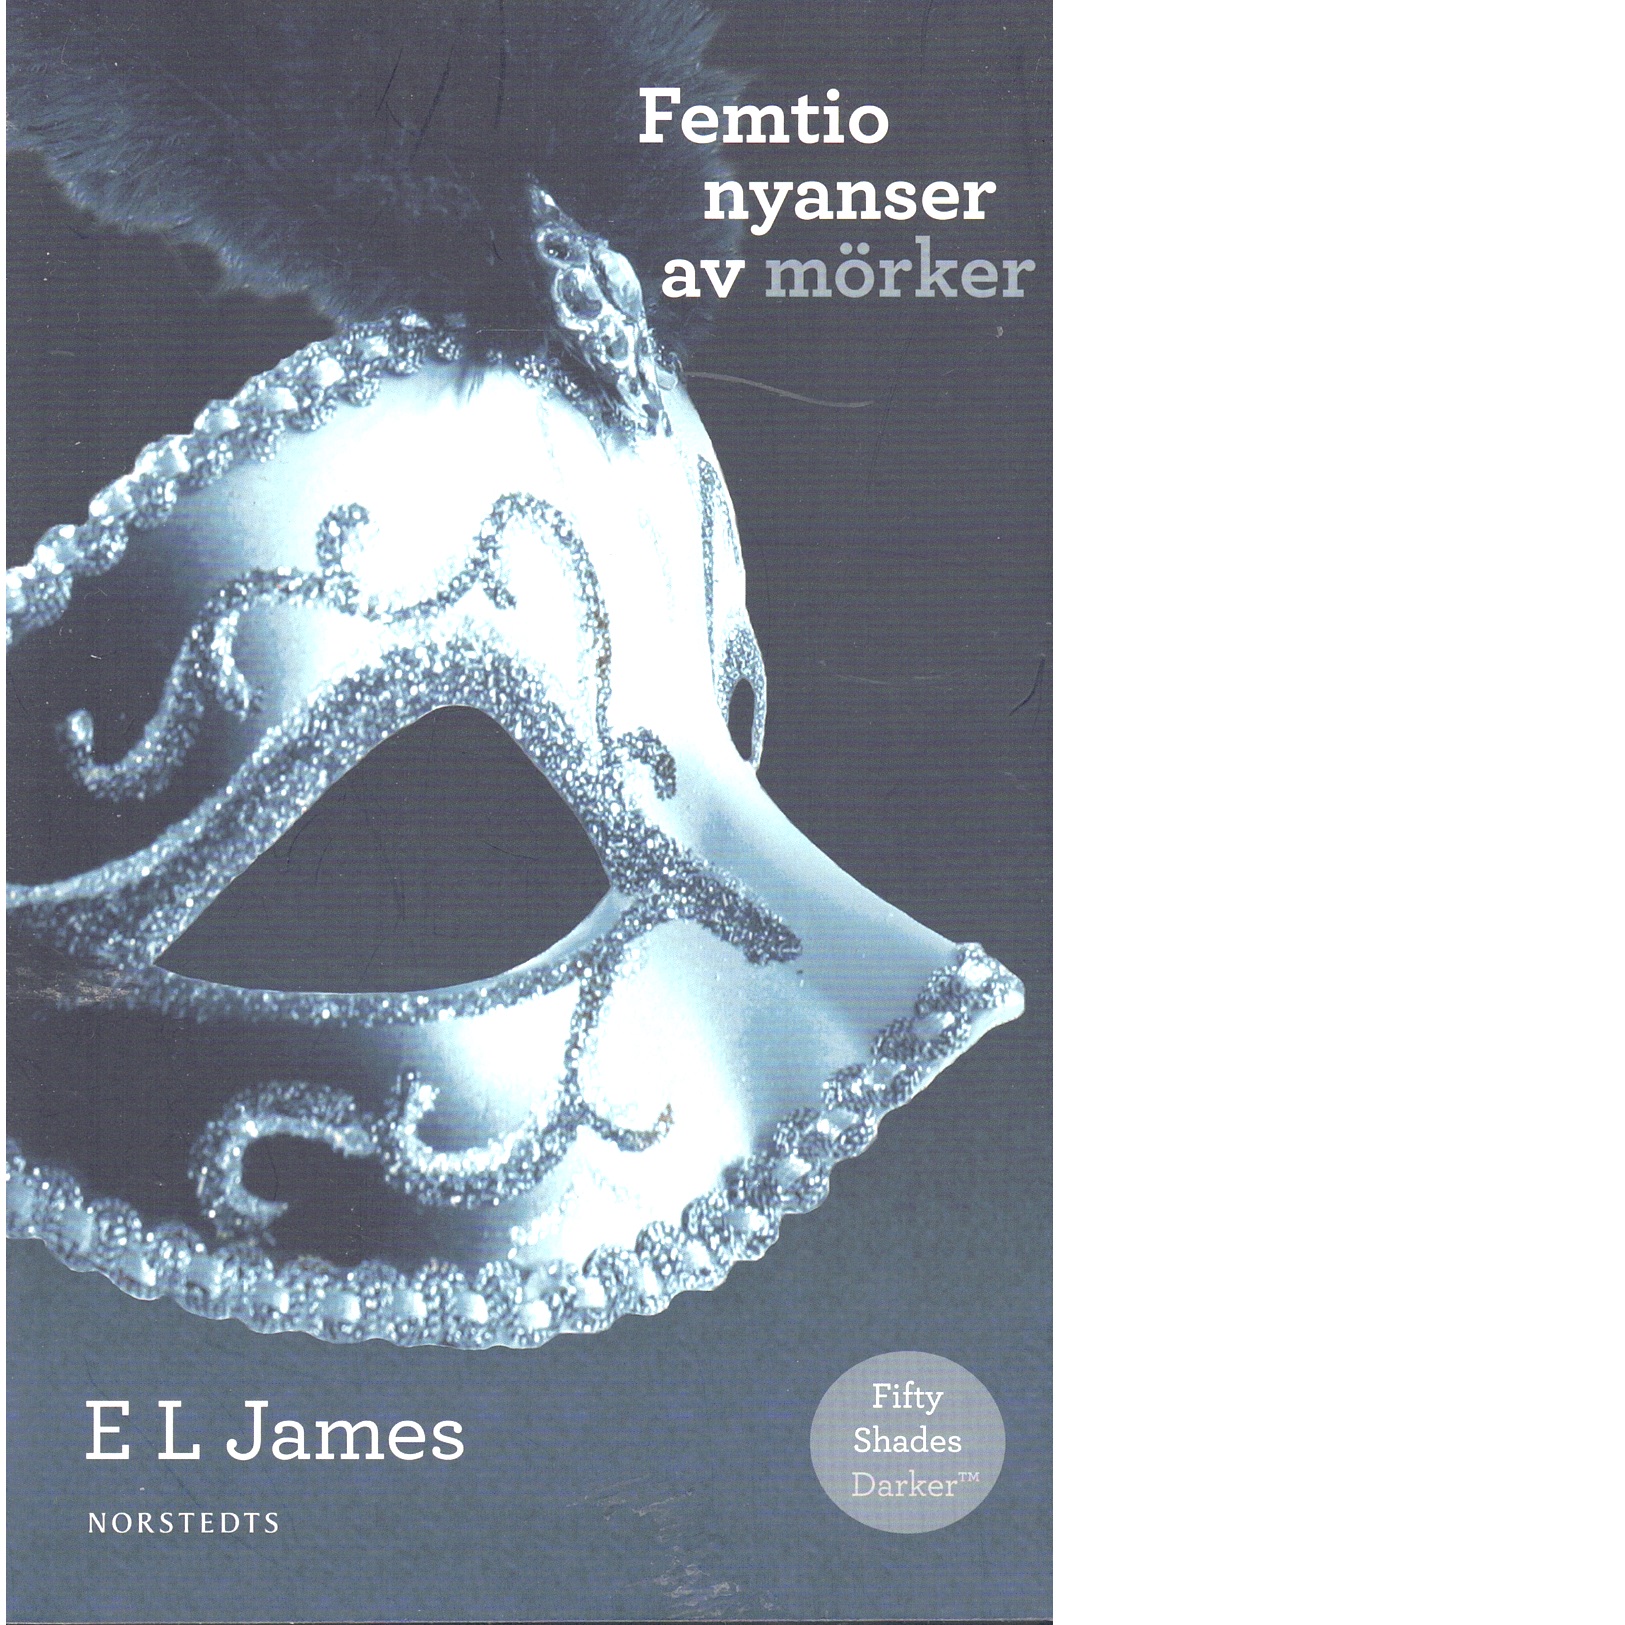 Femtio nyanser av mörker - James, E. L.